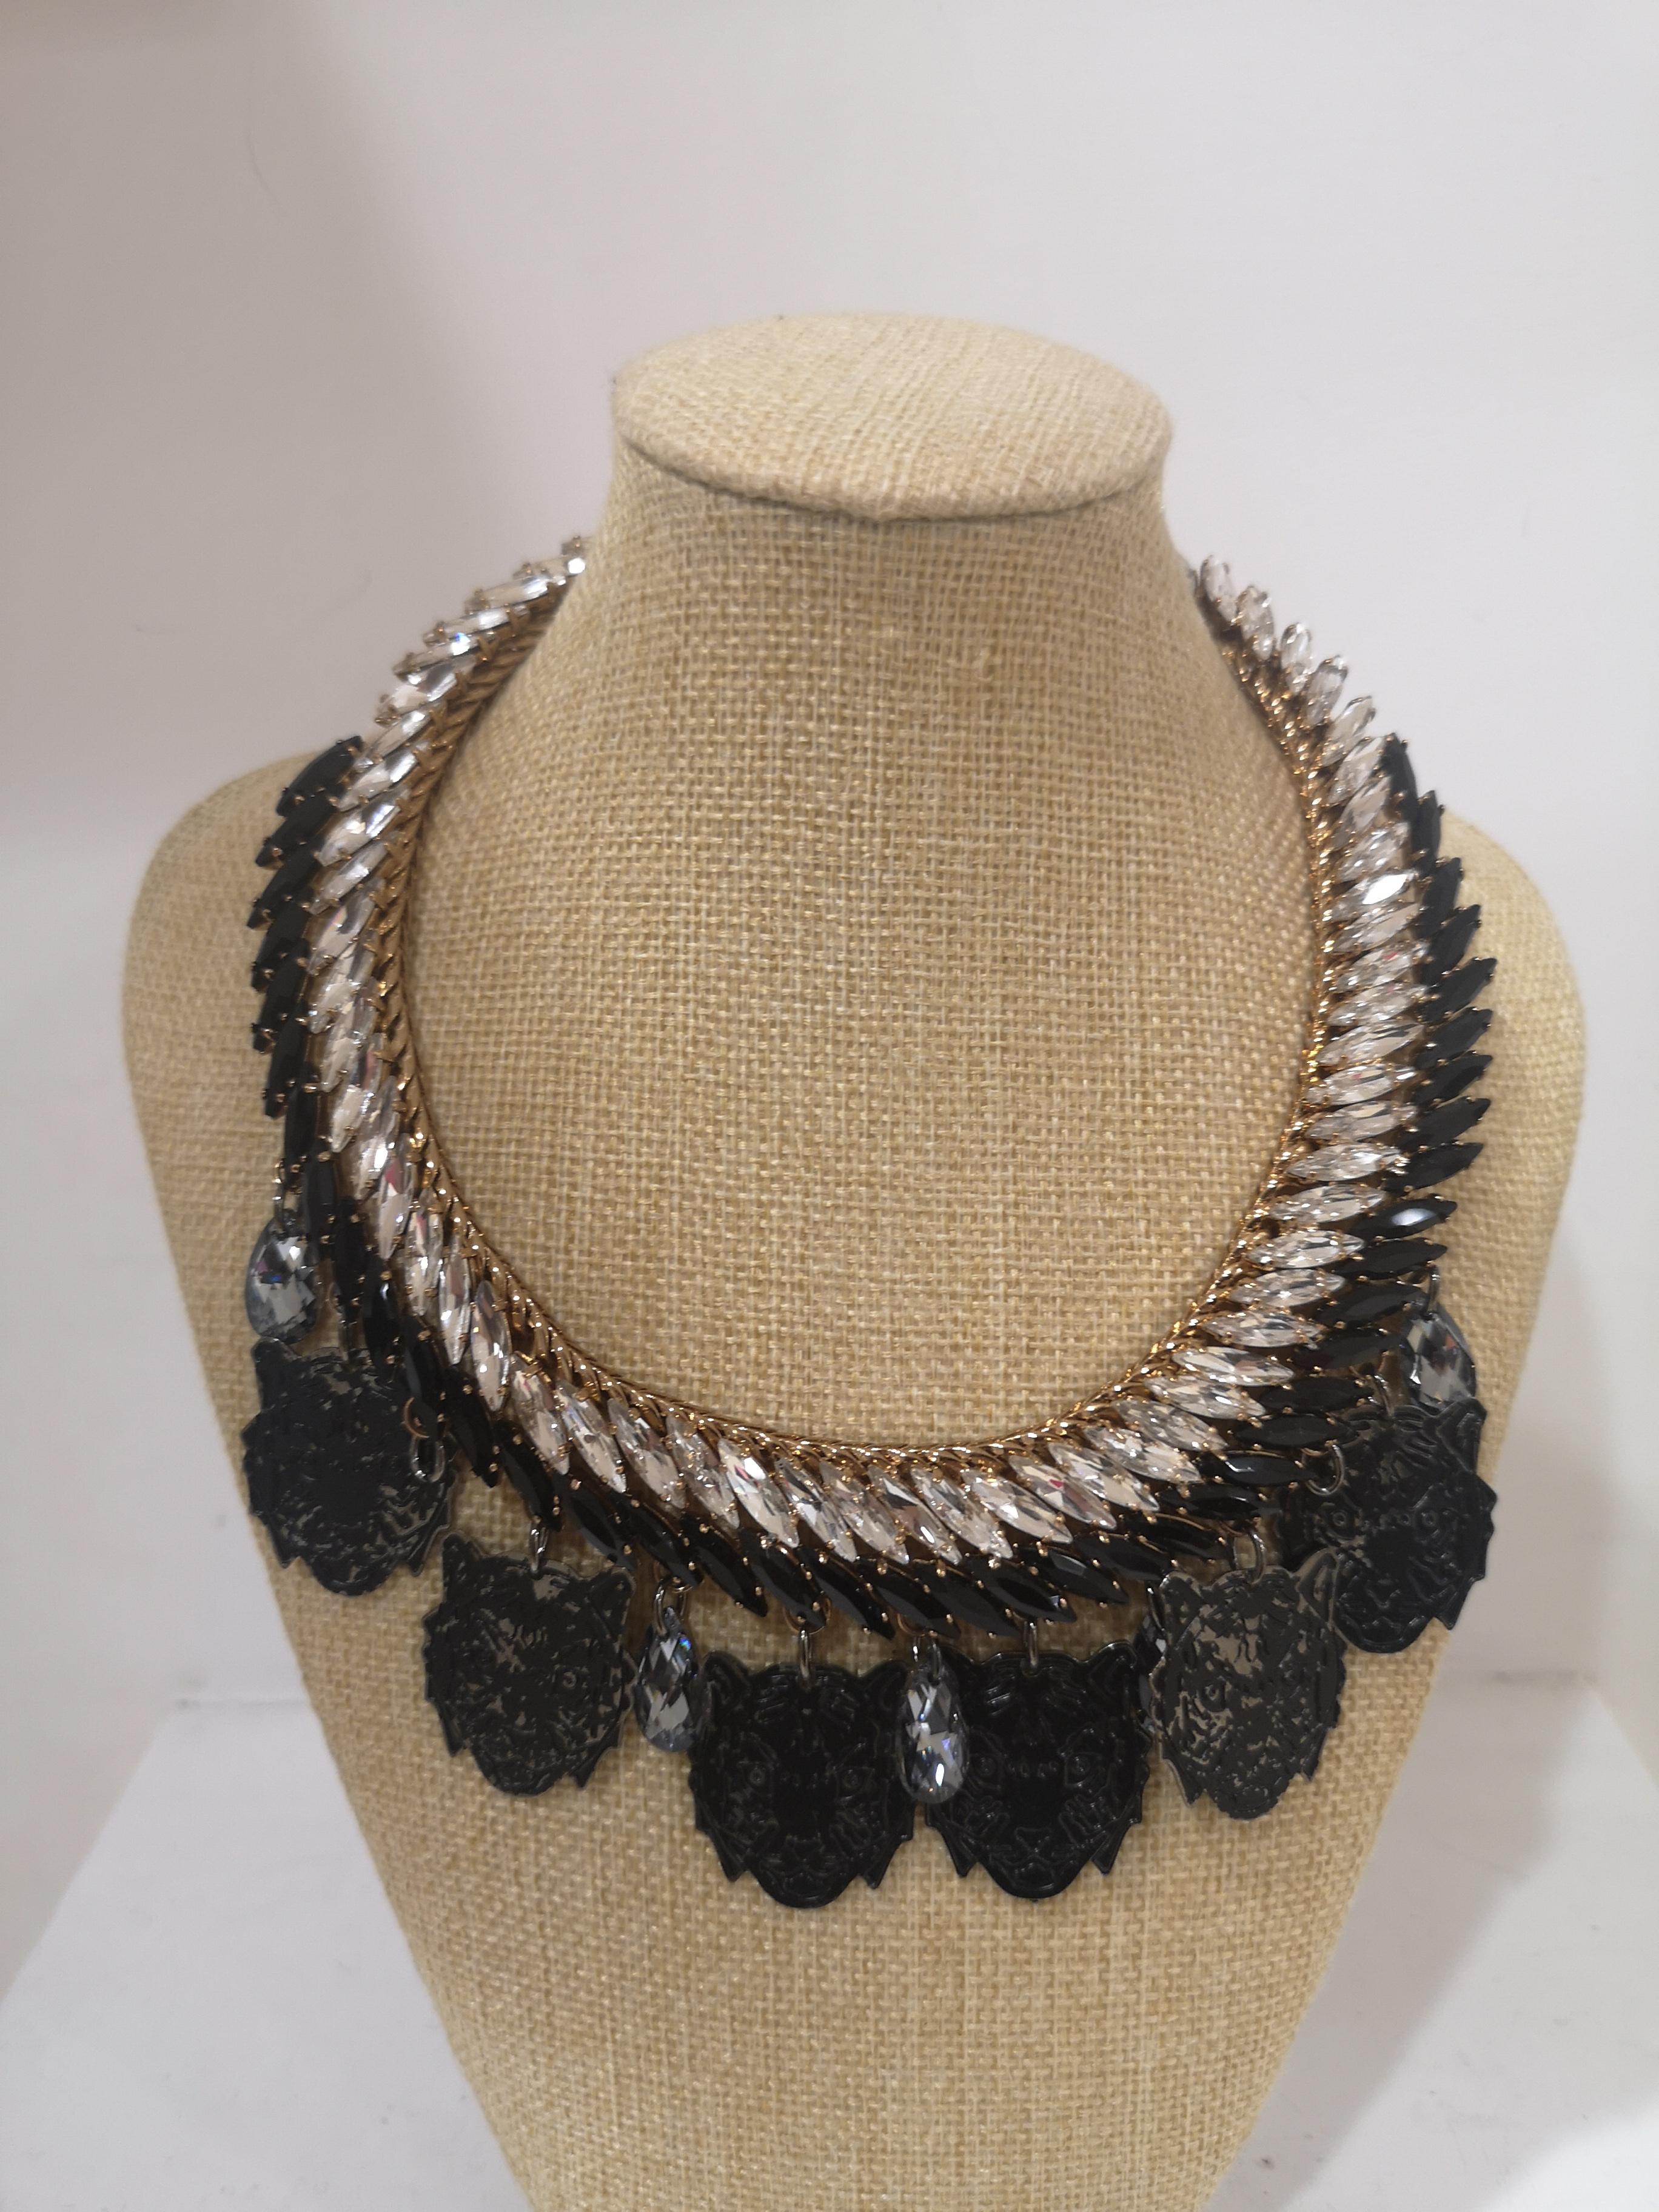 LisaC Black tigers swarovski stones necklace
total lenght 42 cm